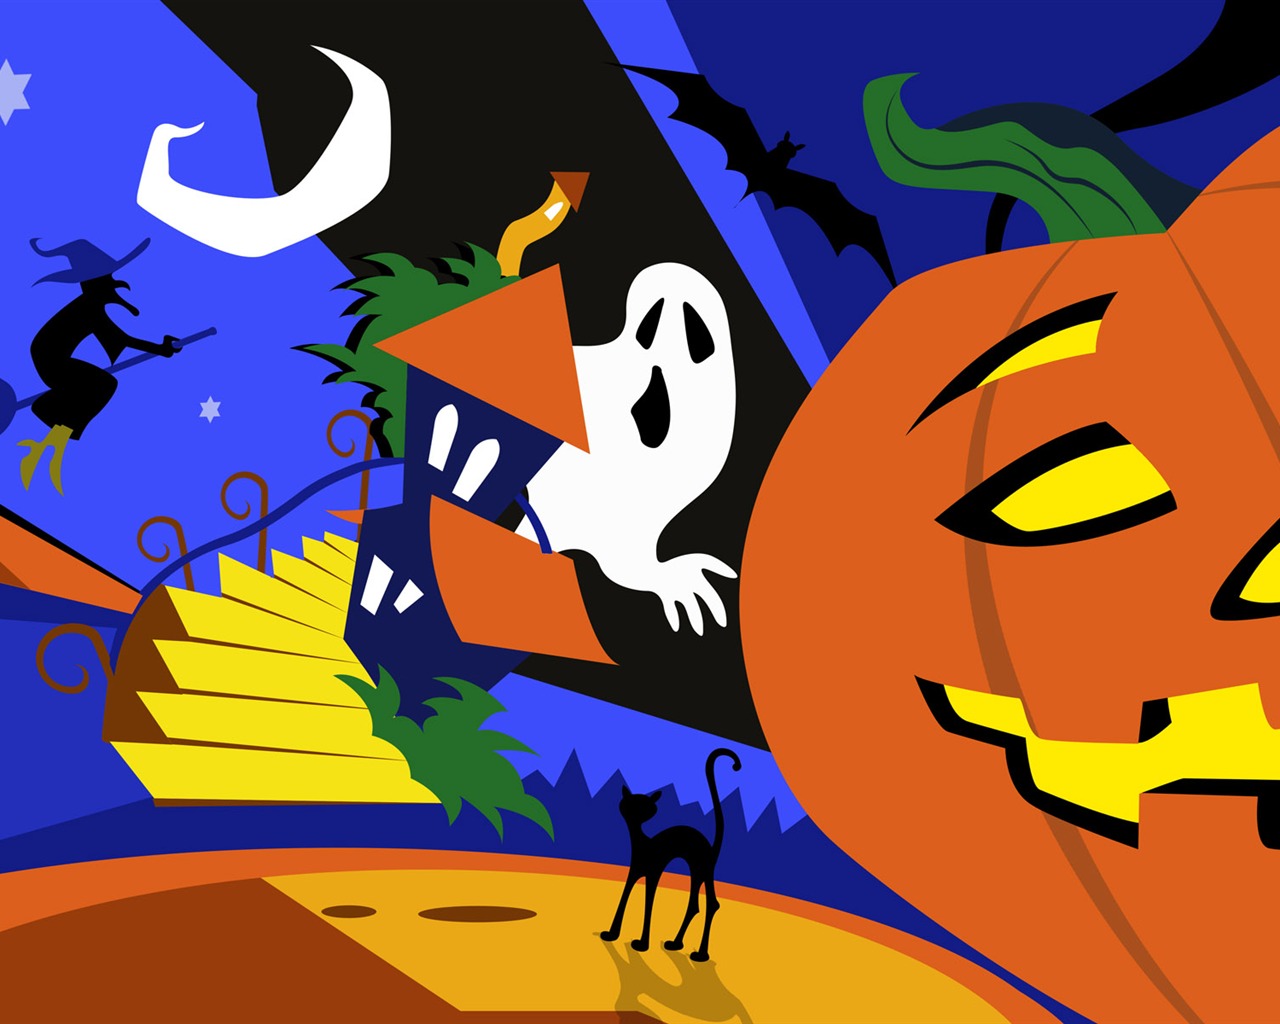 Fondos de Halloween temáticos (5) #1 - 1280x1024